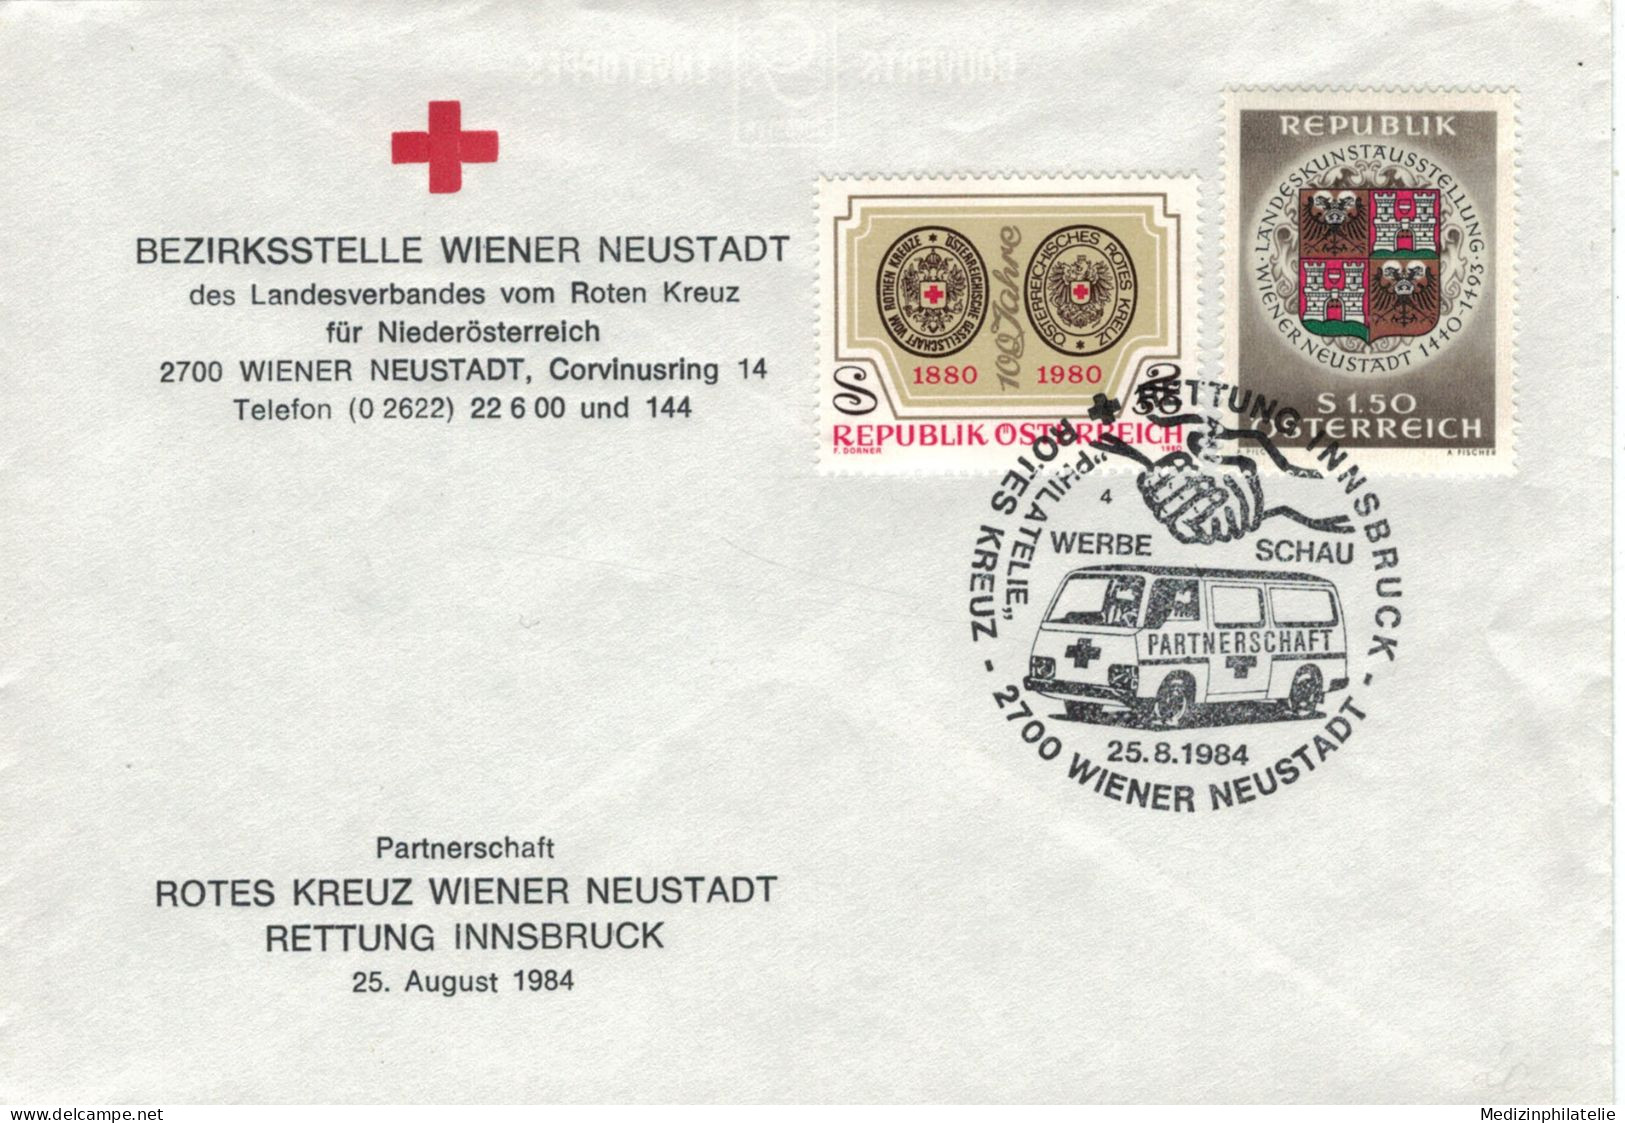 Rotes Kreuz - 2700 Wiener Neustadt 1984 Partnerschaft - First Aid